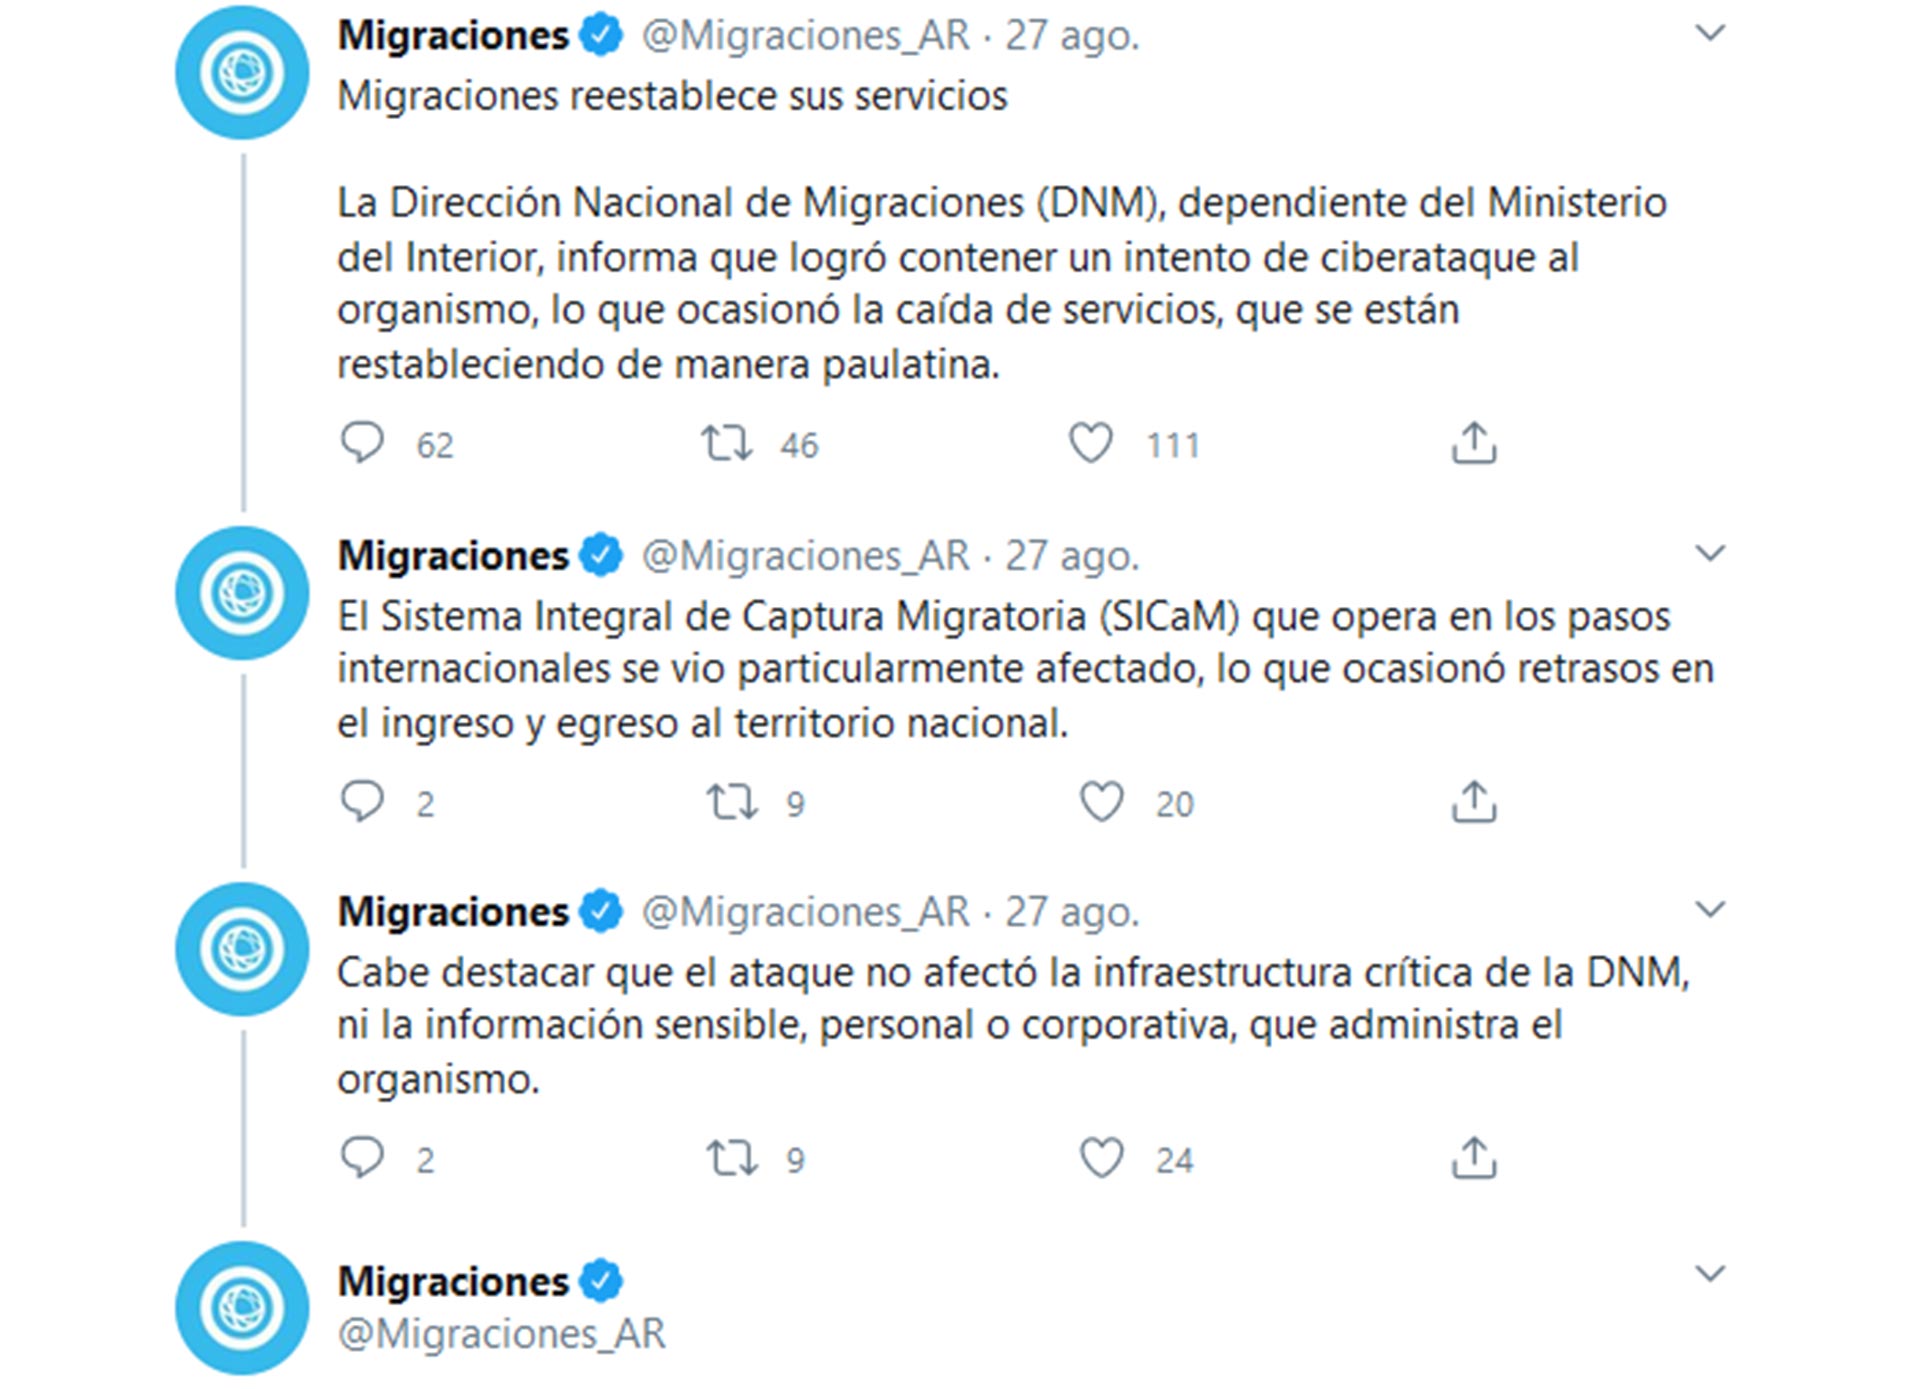 El hilo de tweets de @Migraciones_AR el día del ataque informático